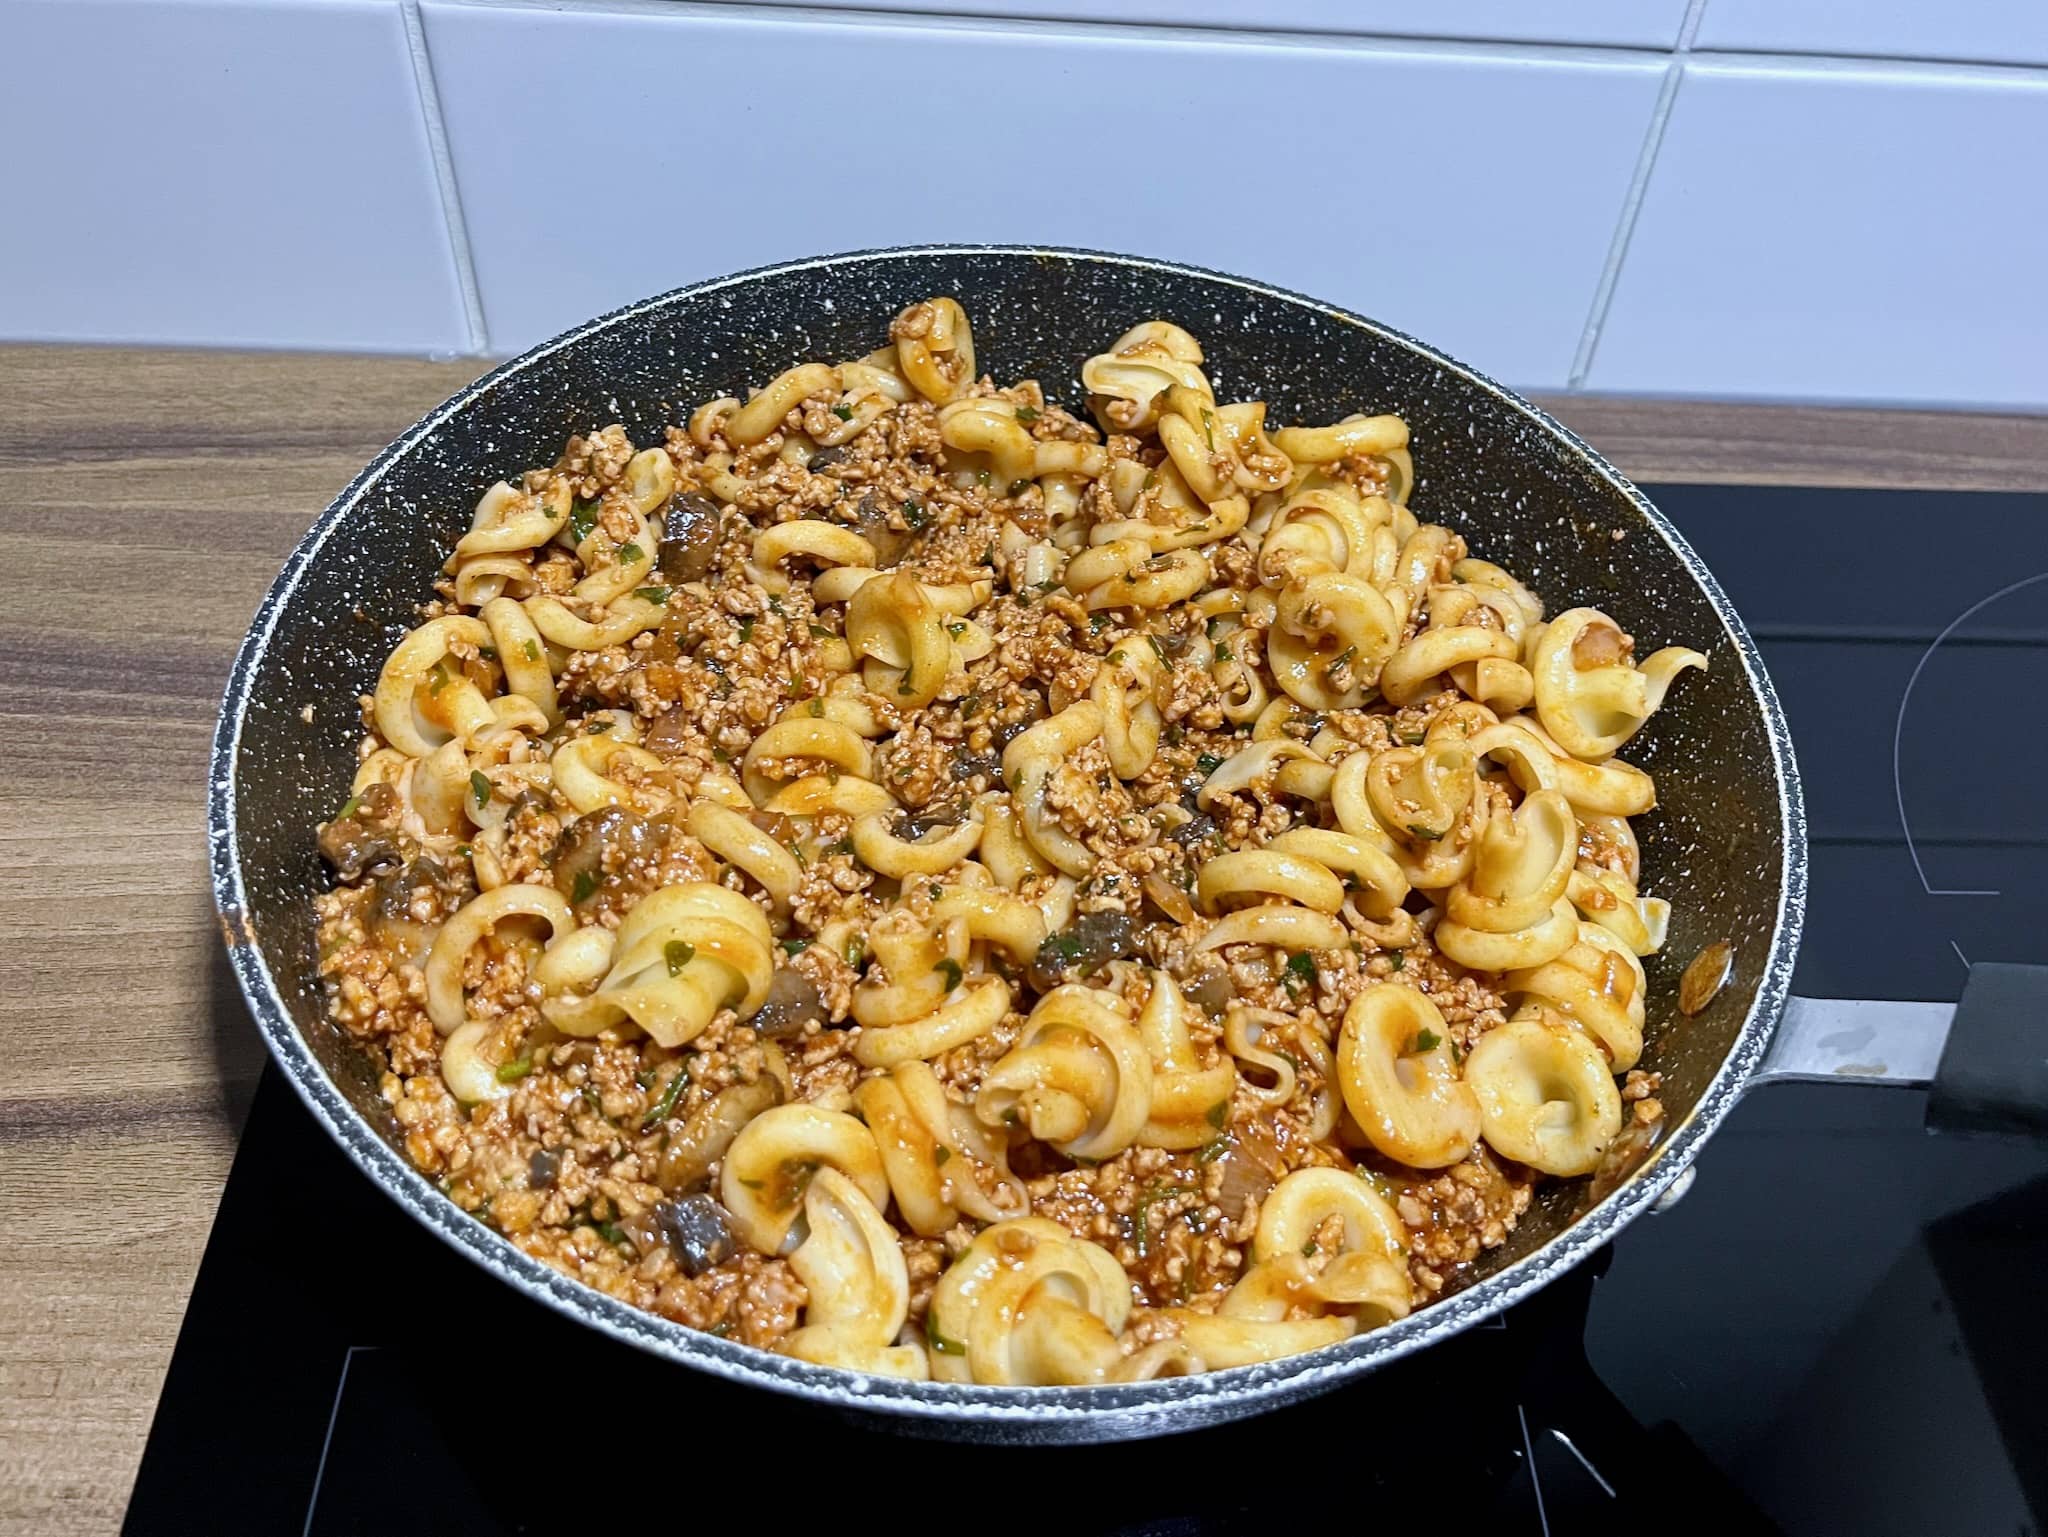 Tomato-pork sauce mixed with Vesuvio pasta before serving